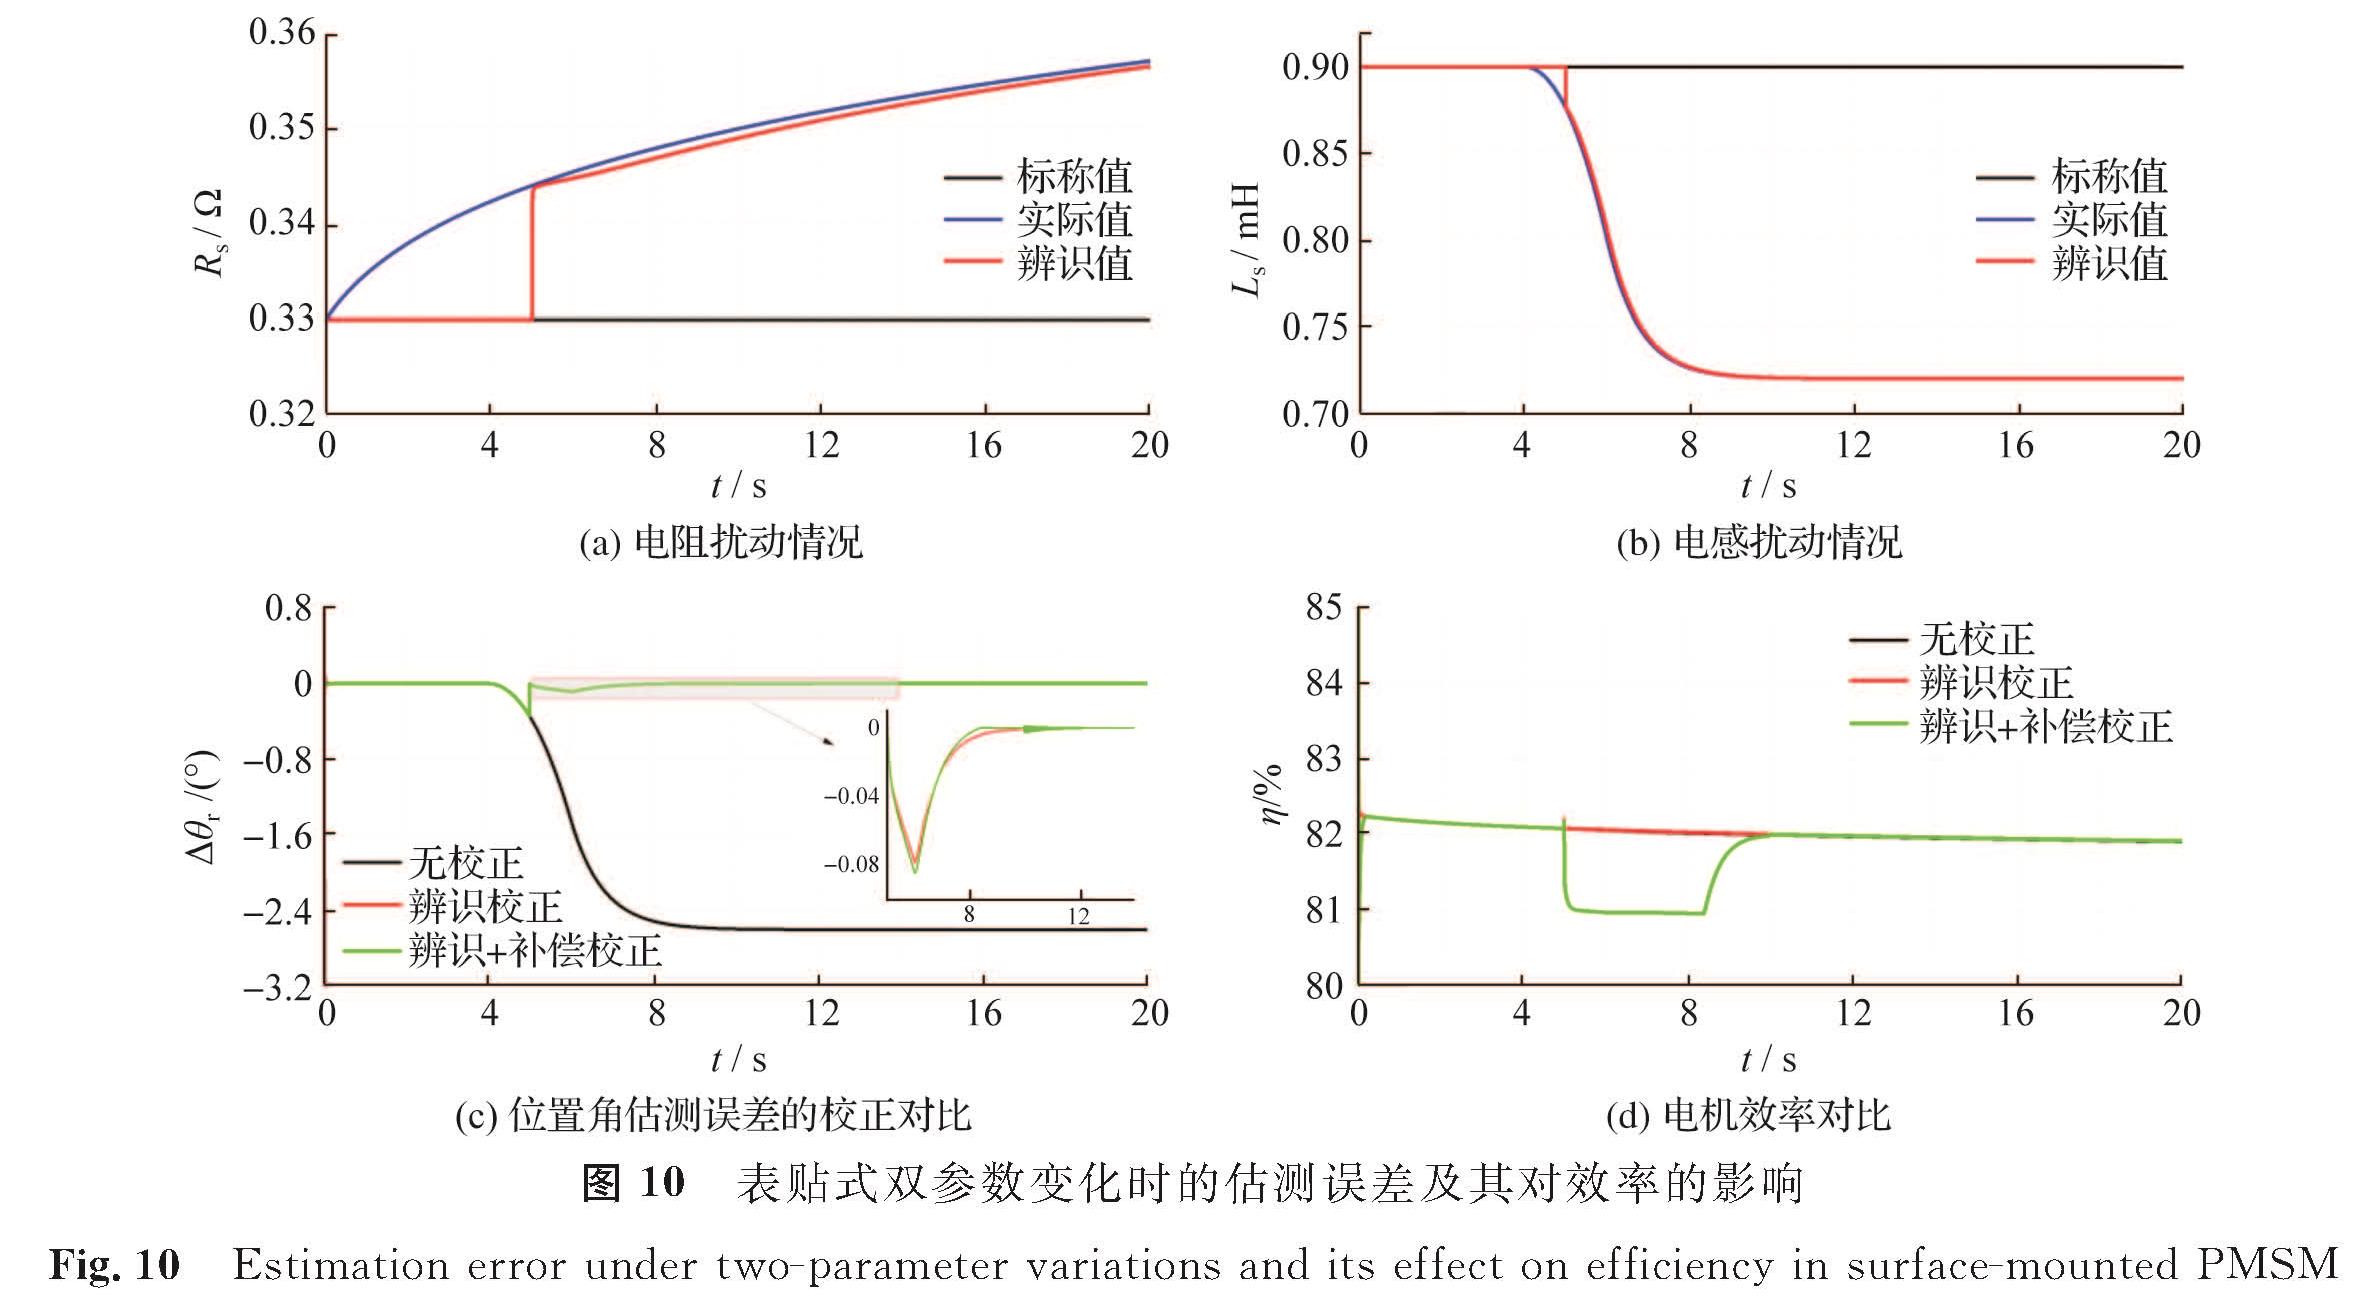 图 10 表贴式双参数变化时的估测误差及其对效率的影响<br/>Fig.10 Estimation error under two-parameter variations and its effect on efficiency in surface-mounted PMSM